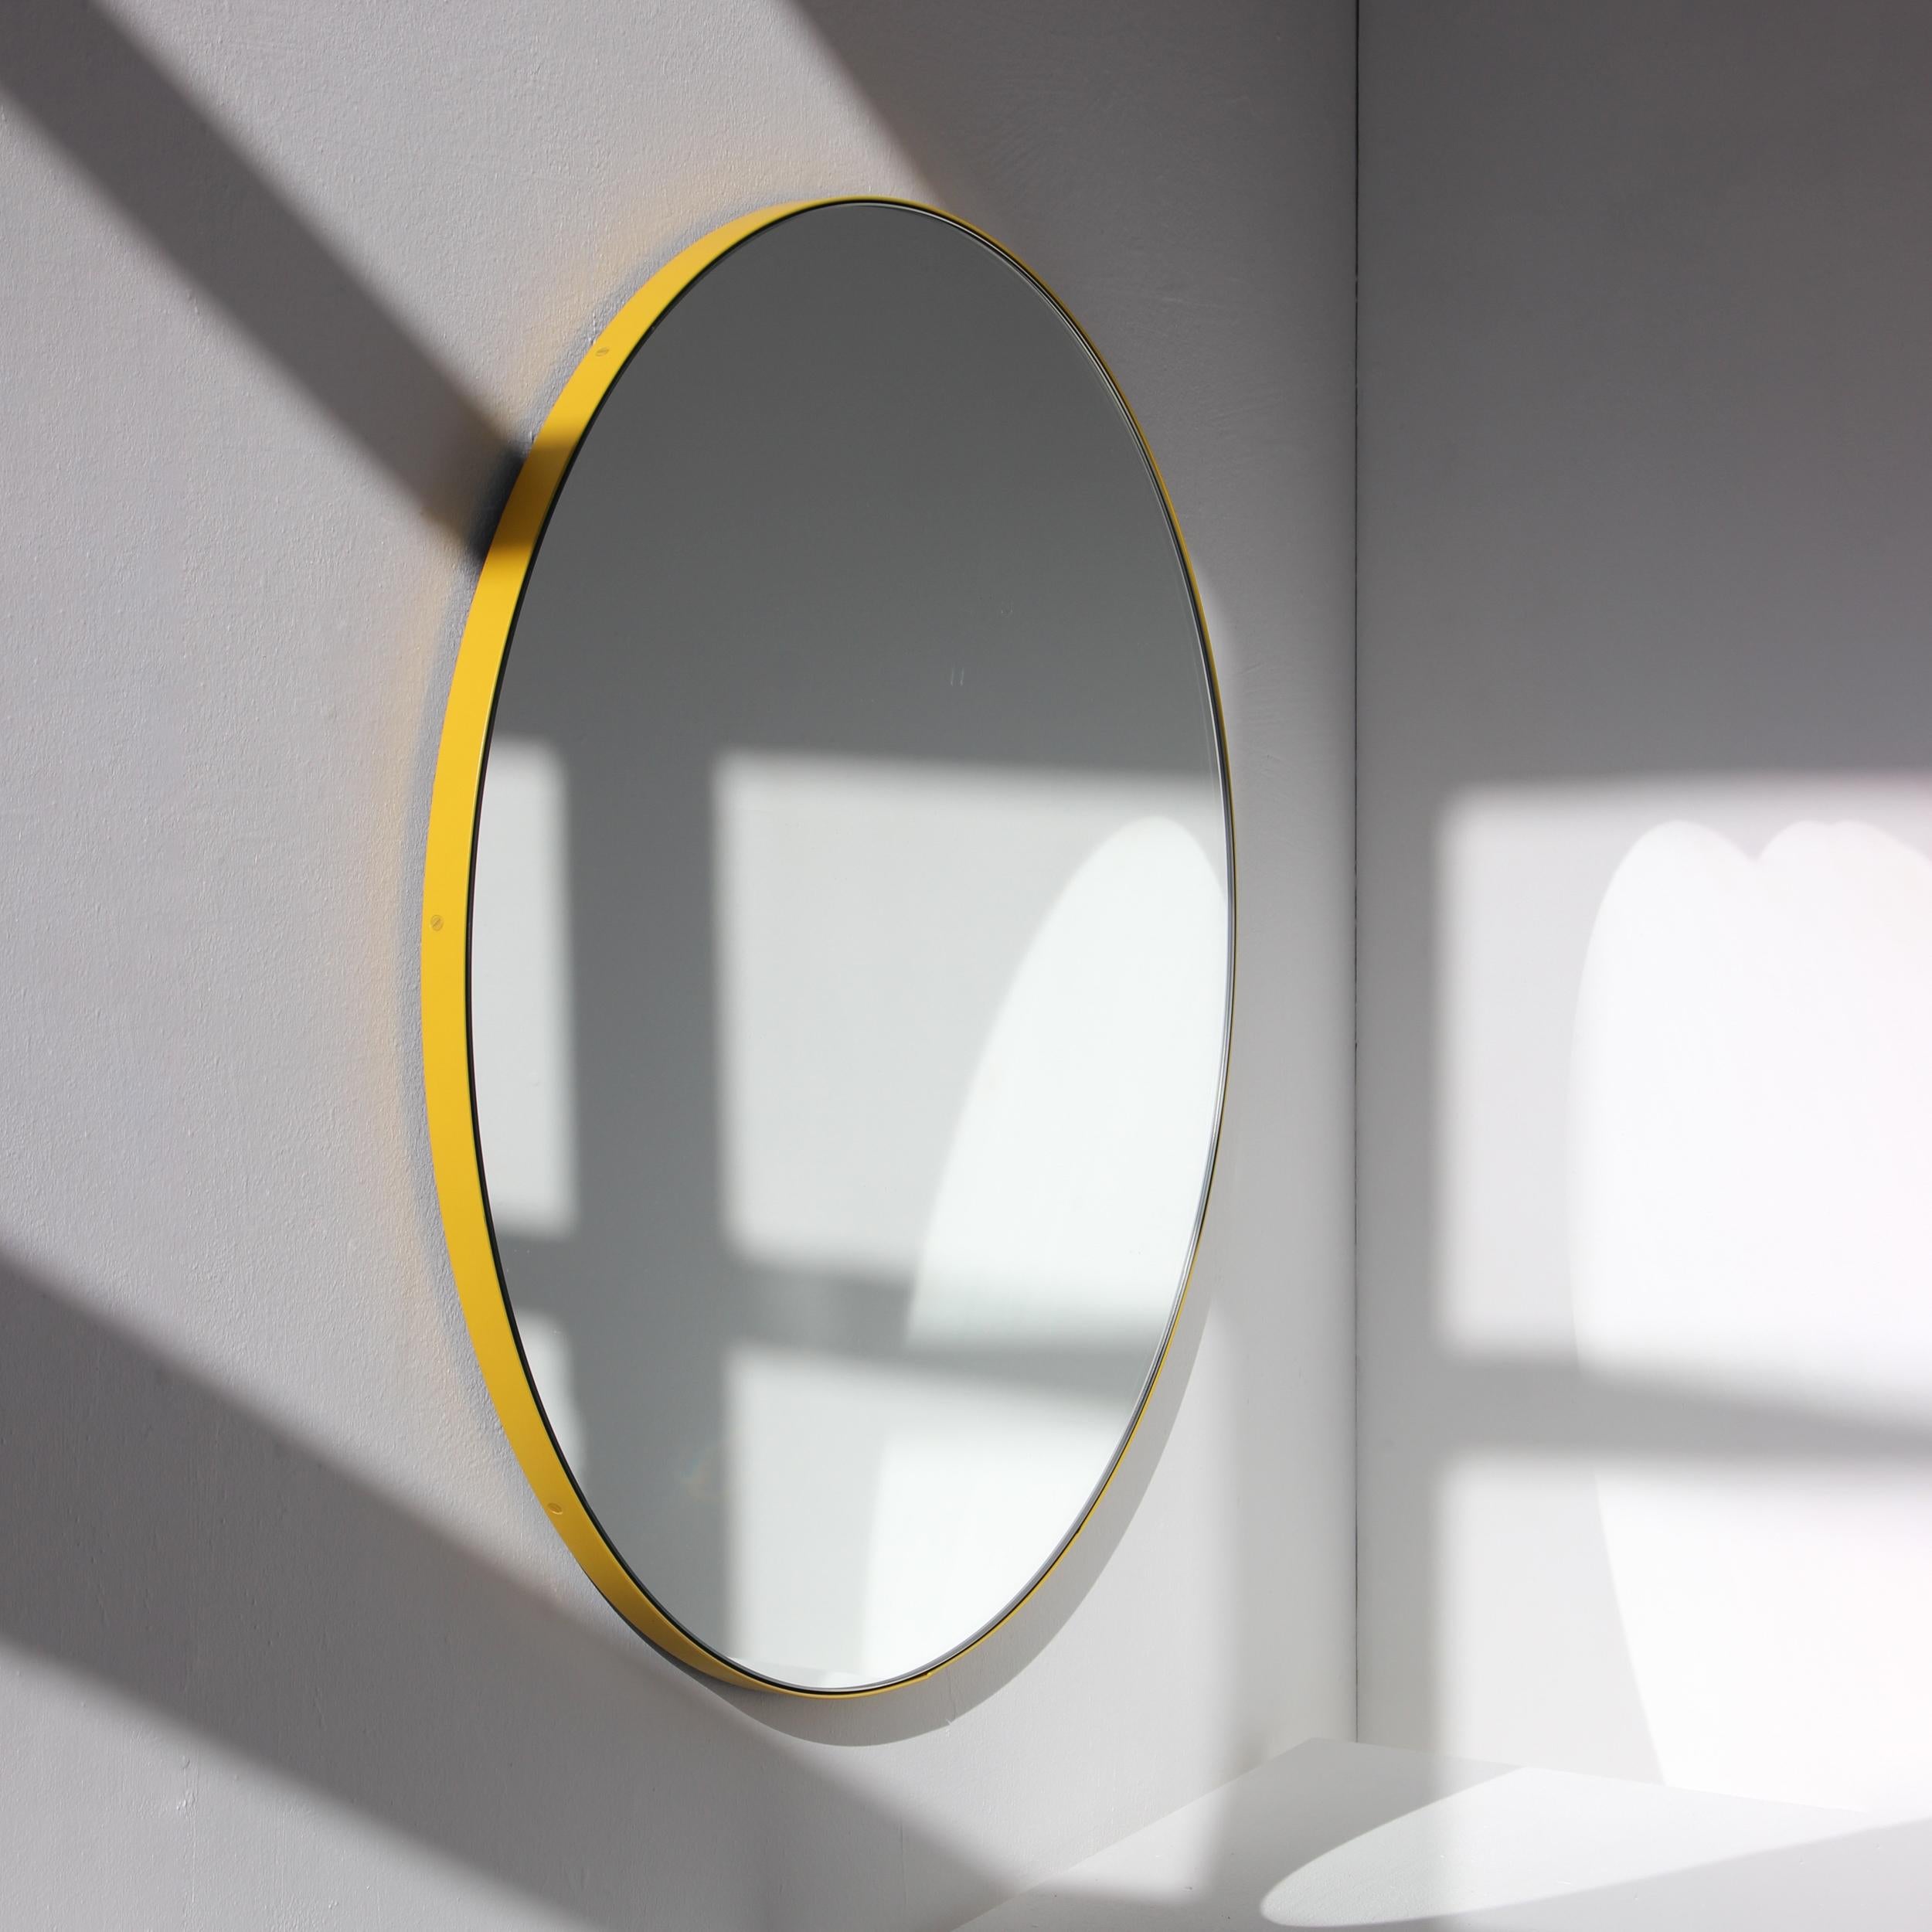 Miroir rond minimaliste avec un cadre moderne en aluminium peint par poudrage en jaune. Conçu et fabriqué à la main à Londres, au Royaume-Uni.

Les miroirs de taille moyenne, grande et extra-large (60, 80 et 100 cm) sont équipés d'un ingénieux